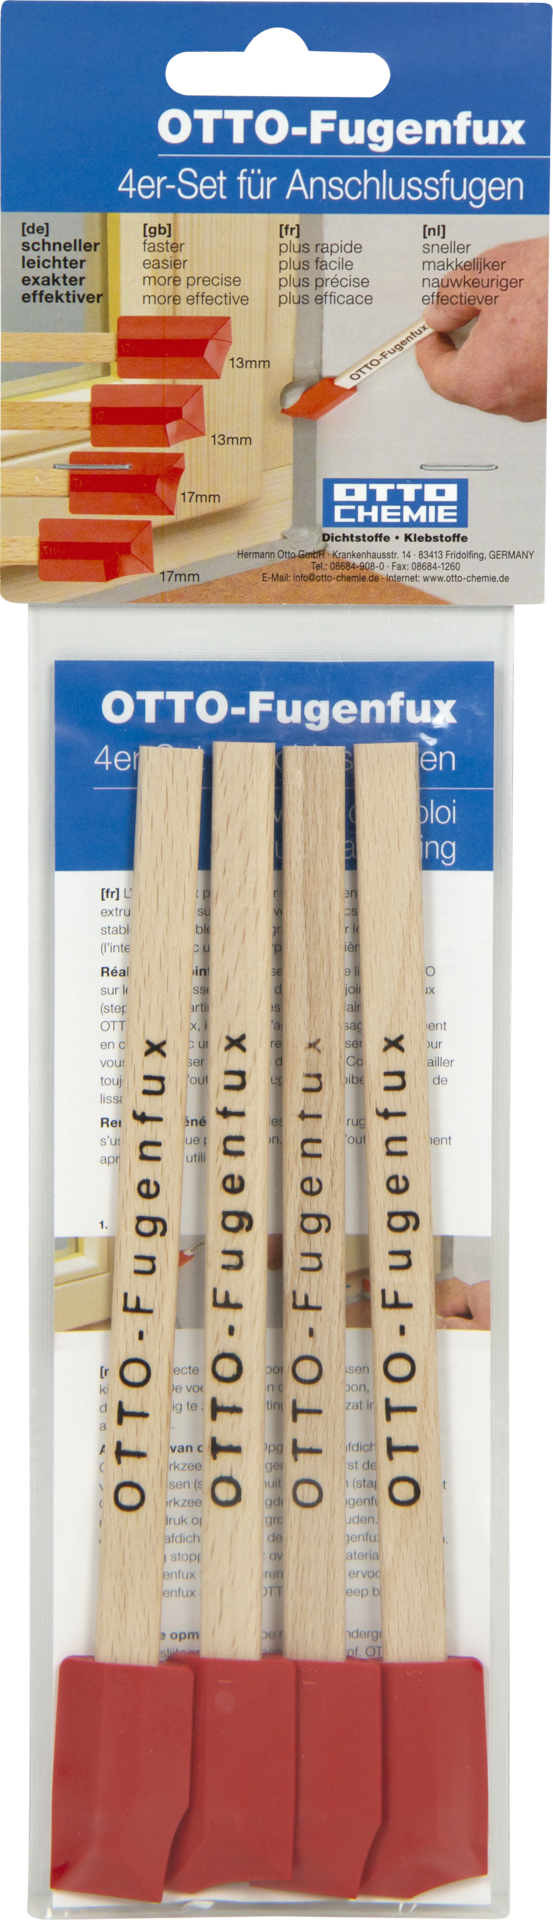 OTTO Fugenfux 4er-Set für Anschlussfugen